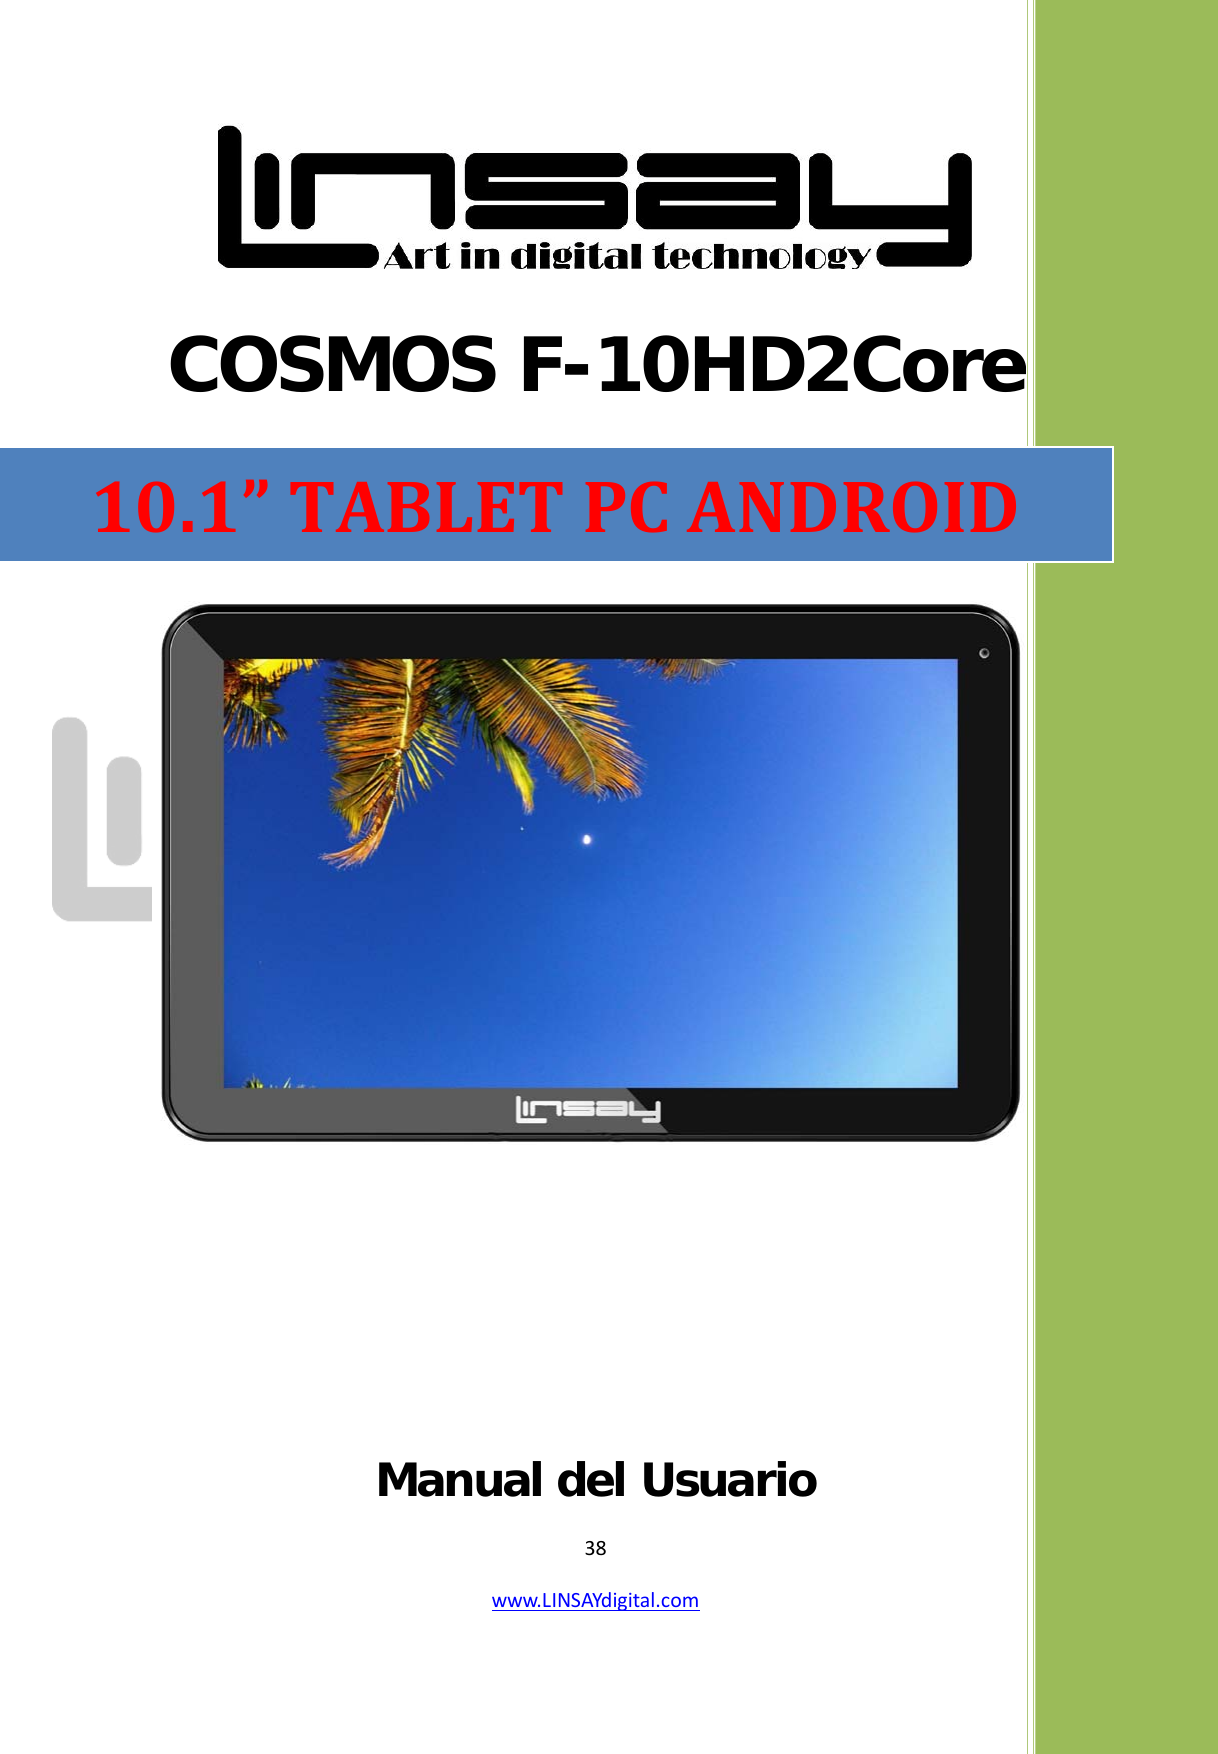  38 www.LINSAYdigital.com    COSMOS F-10HD2Core      Manual del Usuario                                                                10.1” TABLET PC ANDROID 